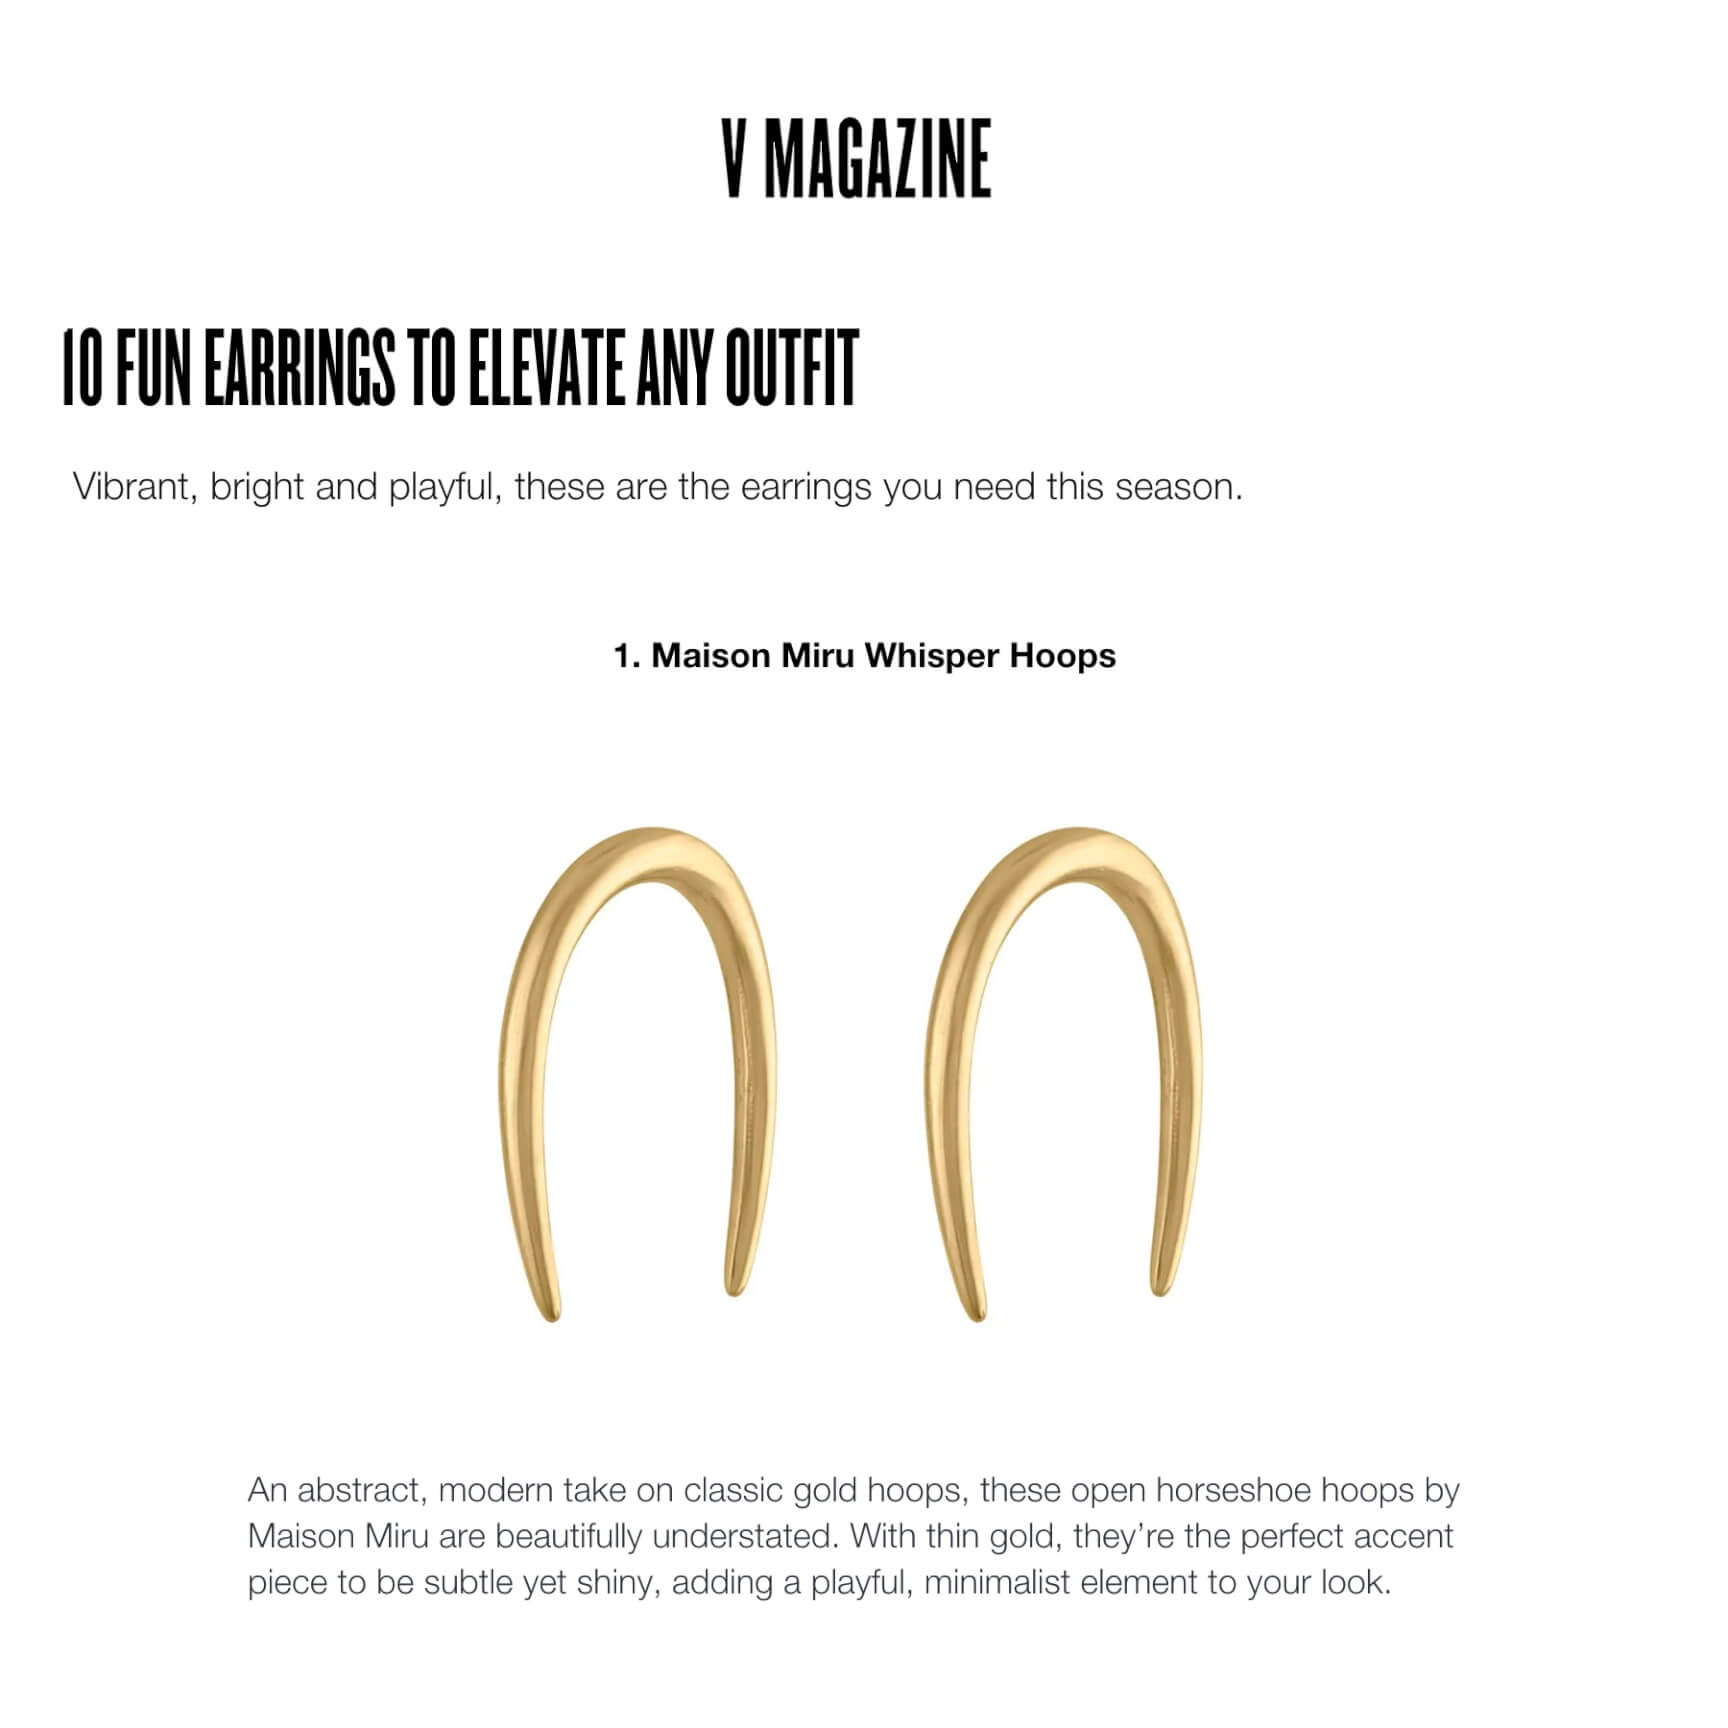 Our Whisper Open Hoop Earrings as seen in V Magazine